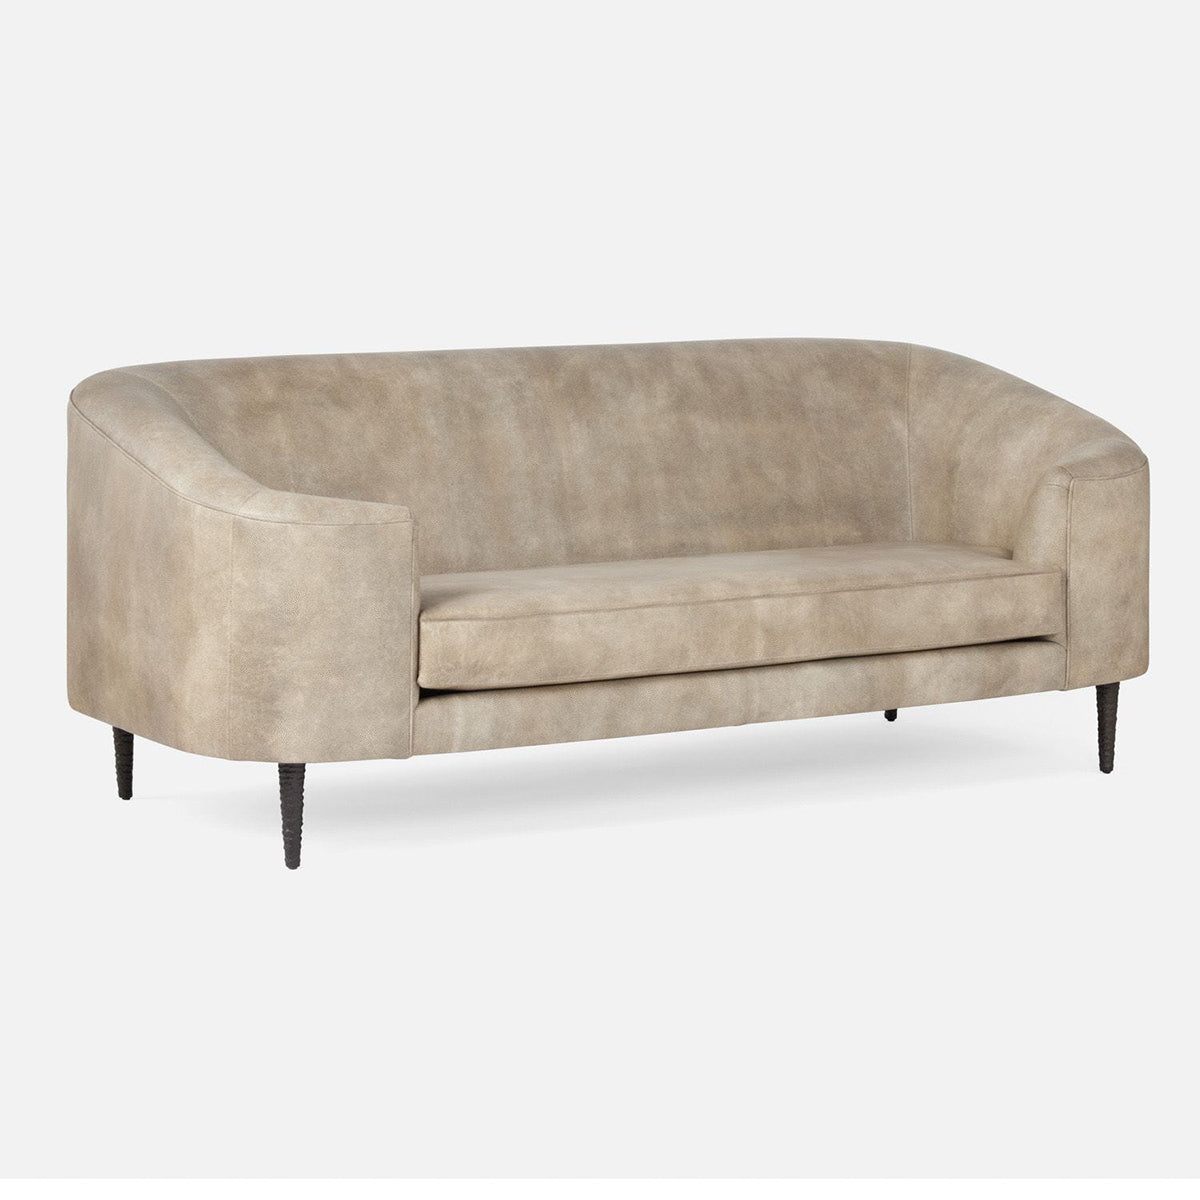 Made Goods Basset Contemporary Cabriole-Style Sofa, Volta Fabric